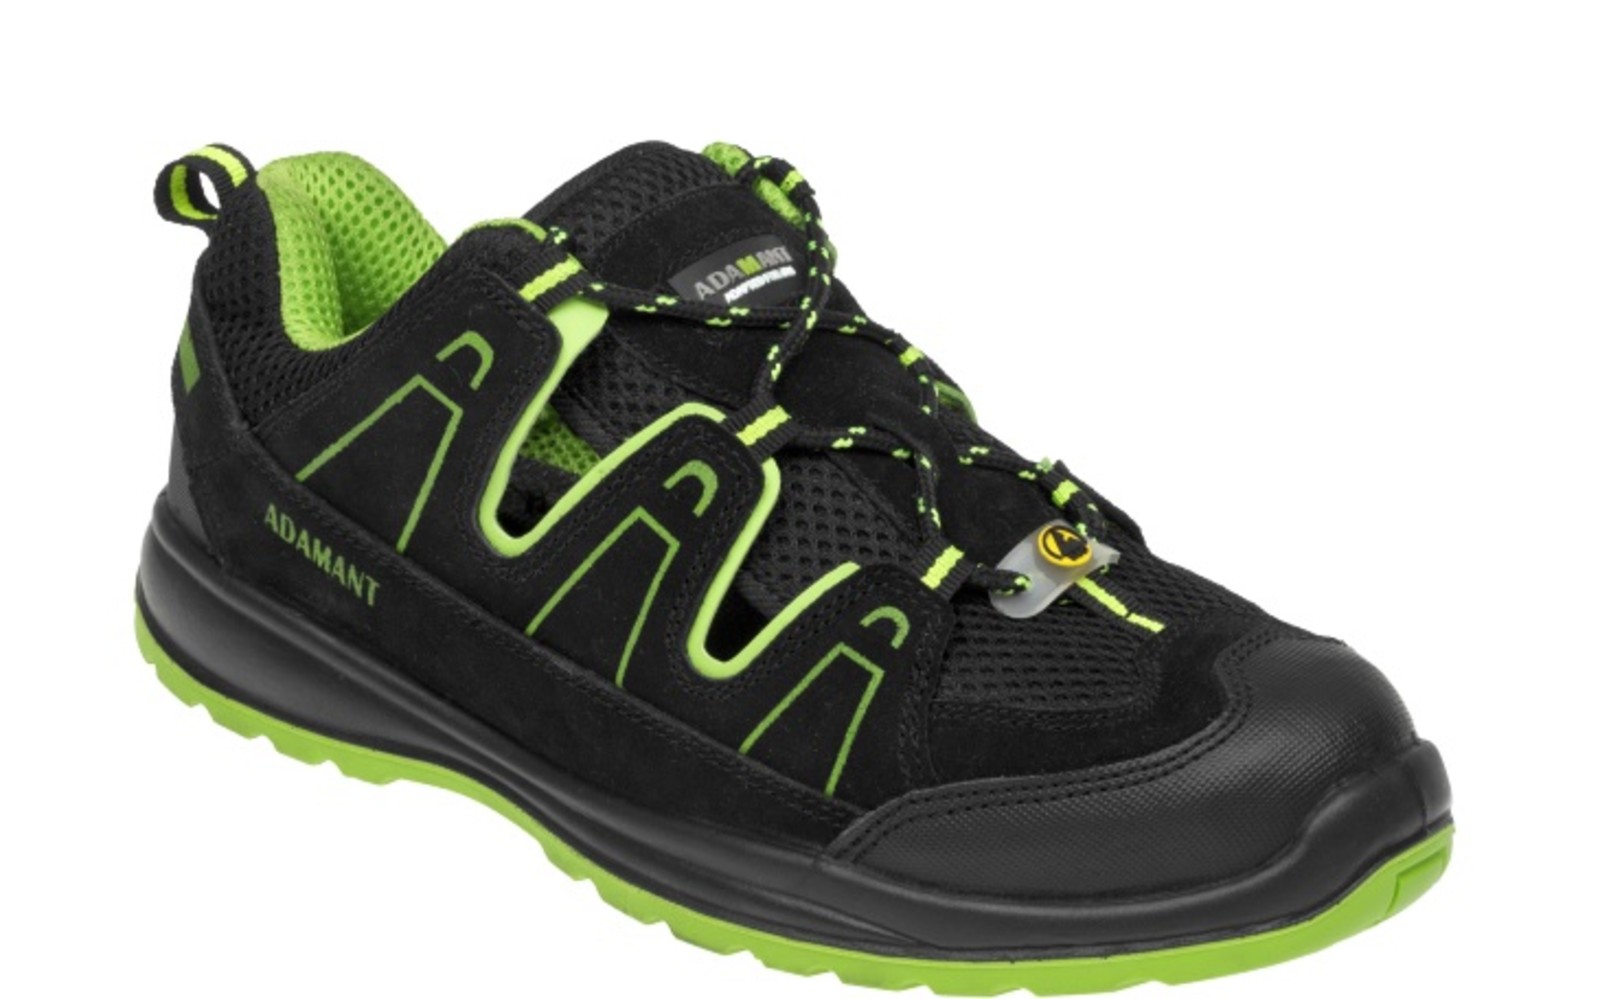 Bezpečnostné sandále Adamant Alegro S1 ESD - veľkosť: 48, farba: čierna/zelená